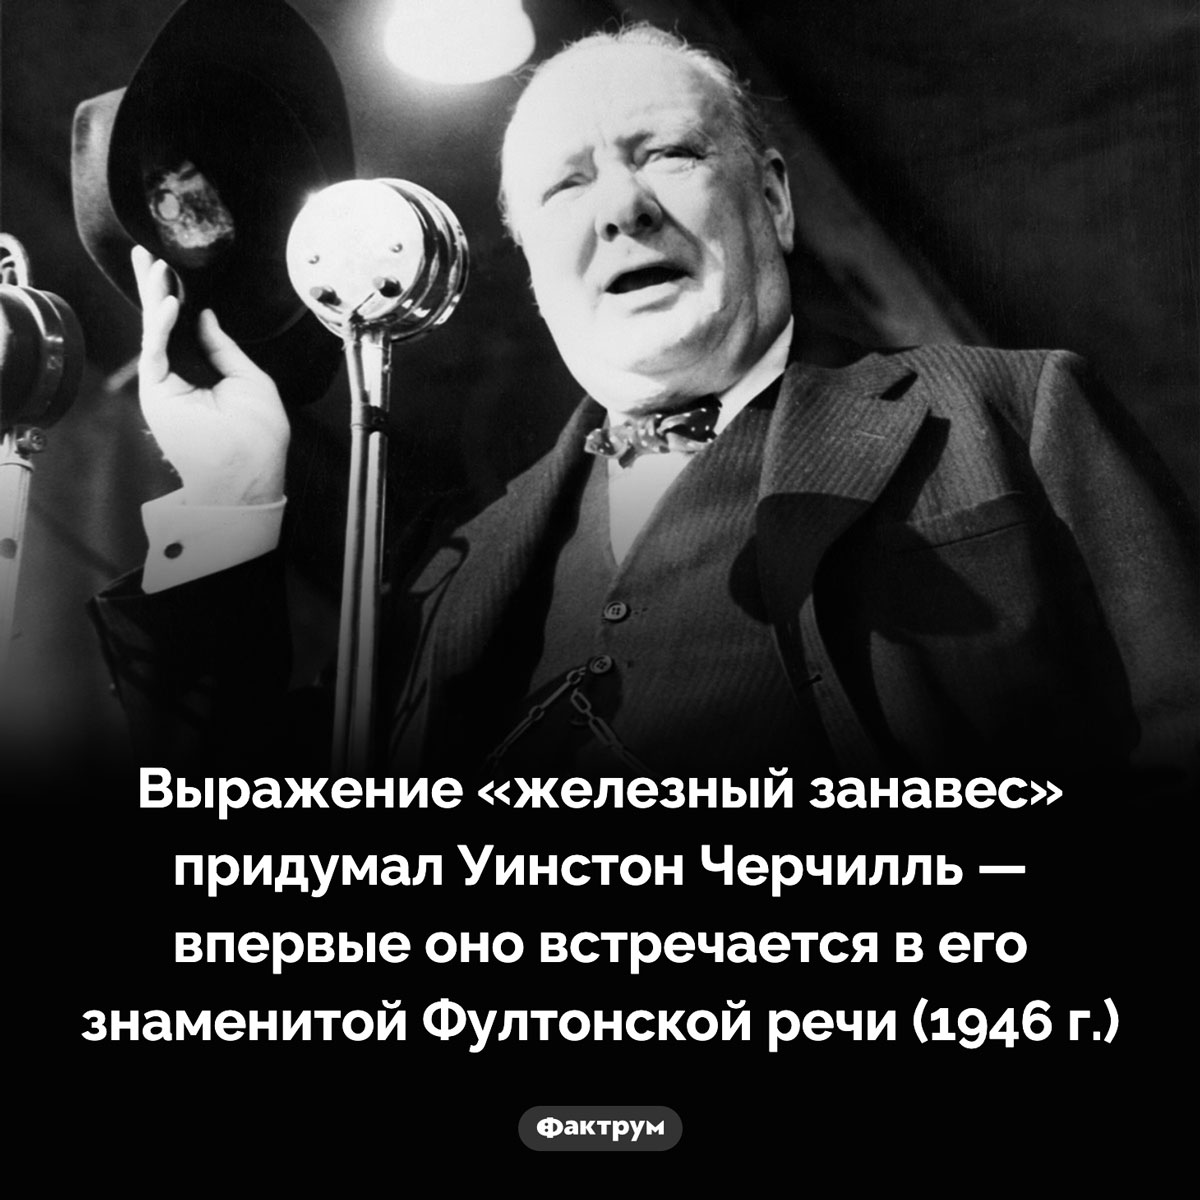 Кто придумал выражение «железный занавес». Выражение «железный занавес» придумал Уинстон Черчилль — впервые оно встречается в его знаменитой Фултонской речи (1946 г.)